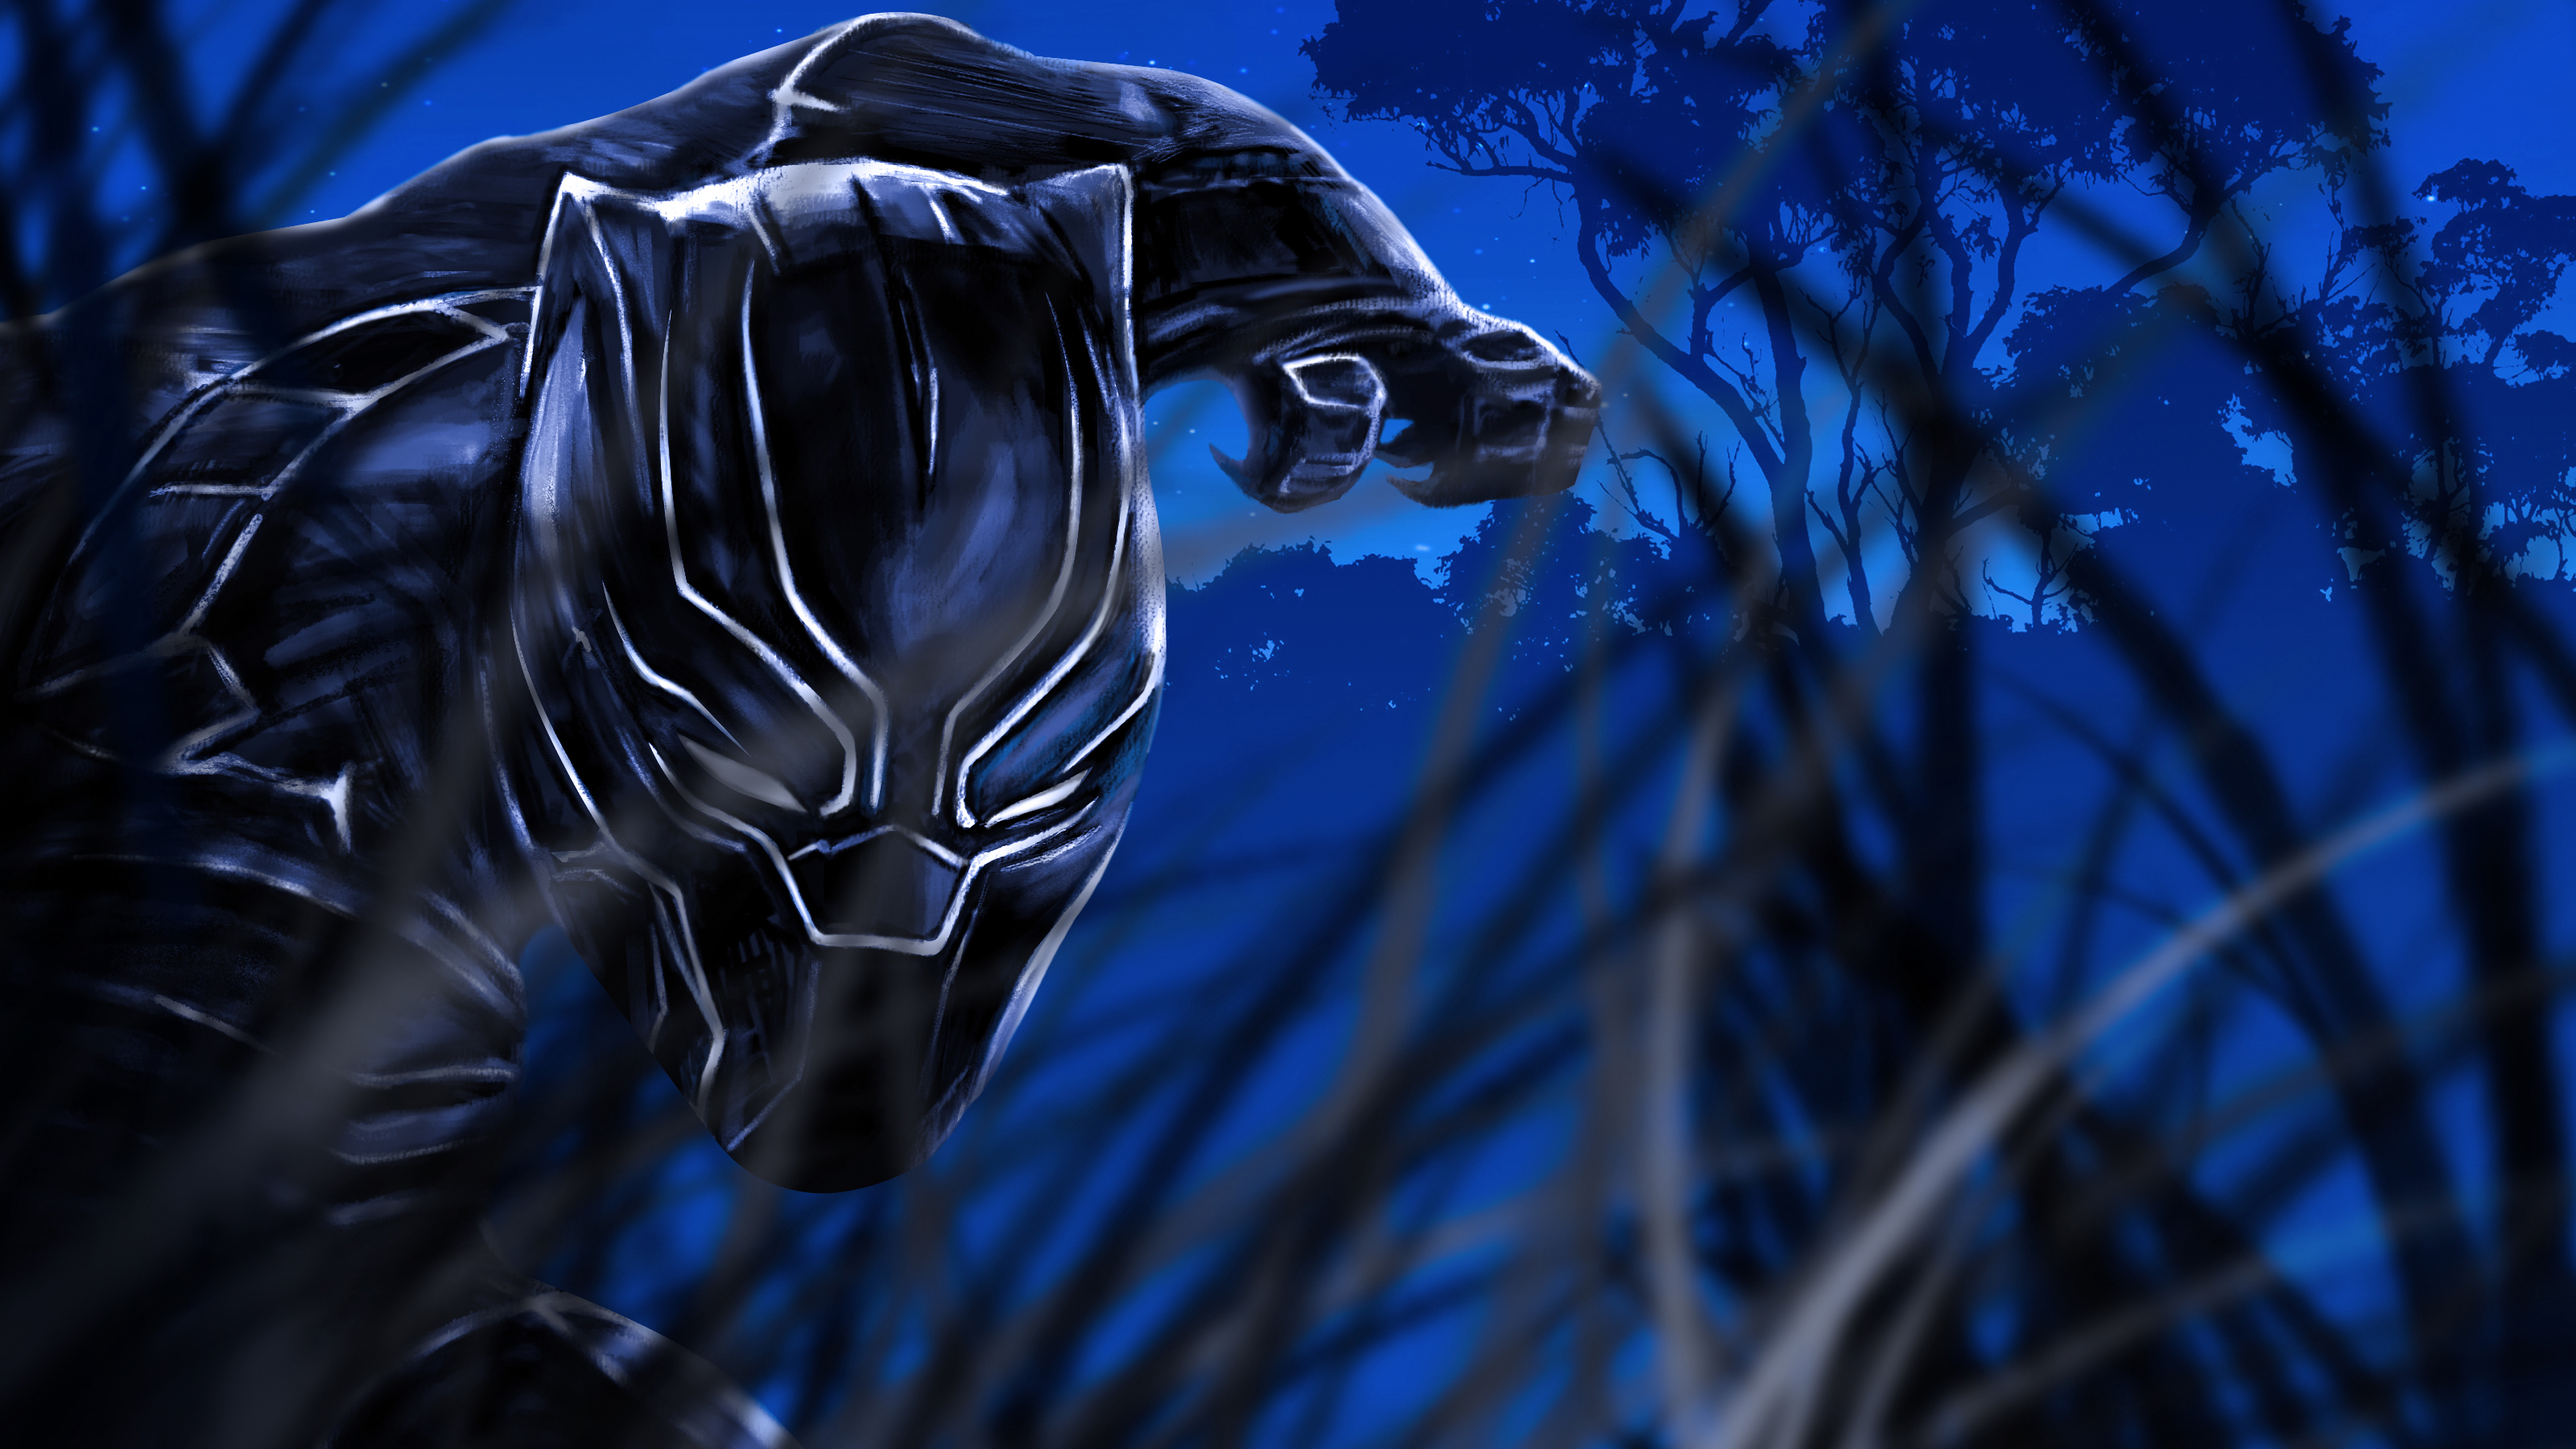 Black Panther Fan art